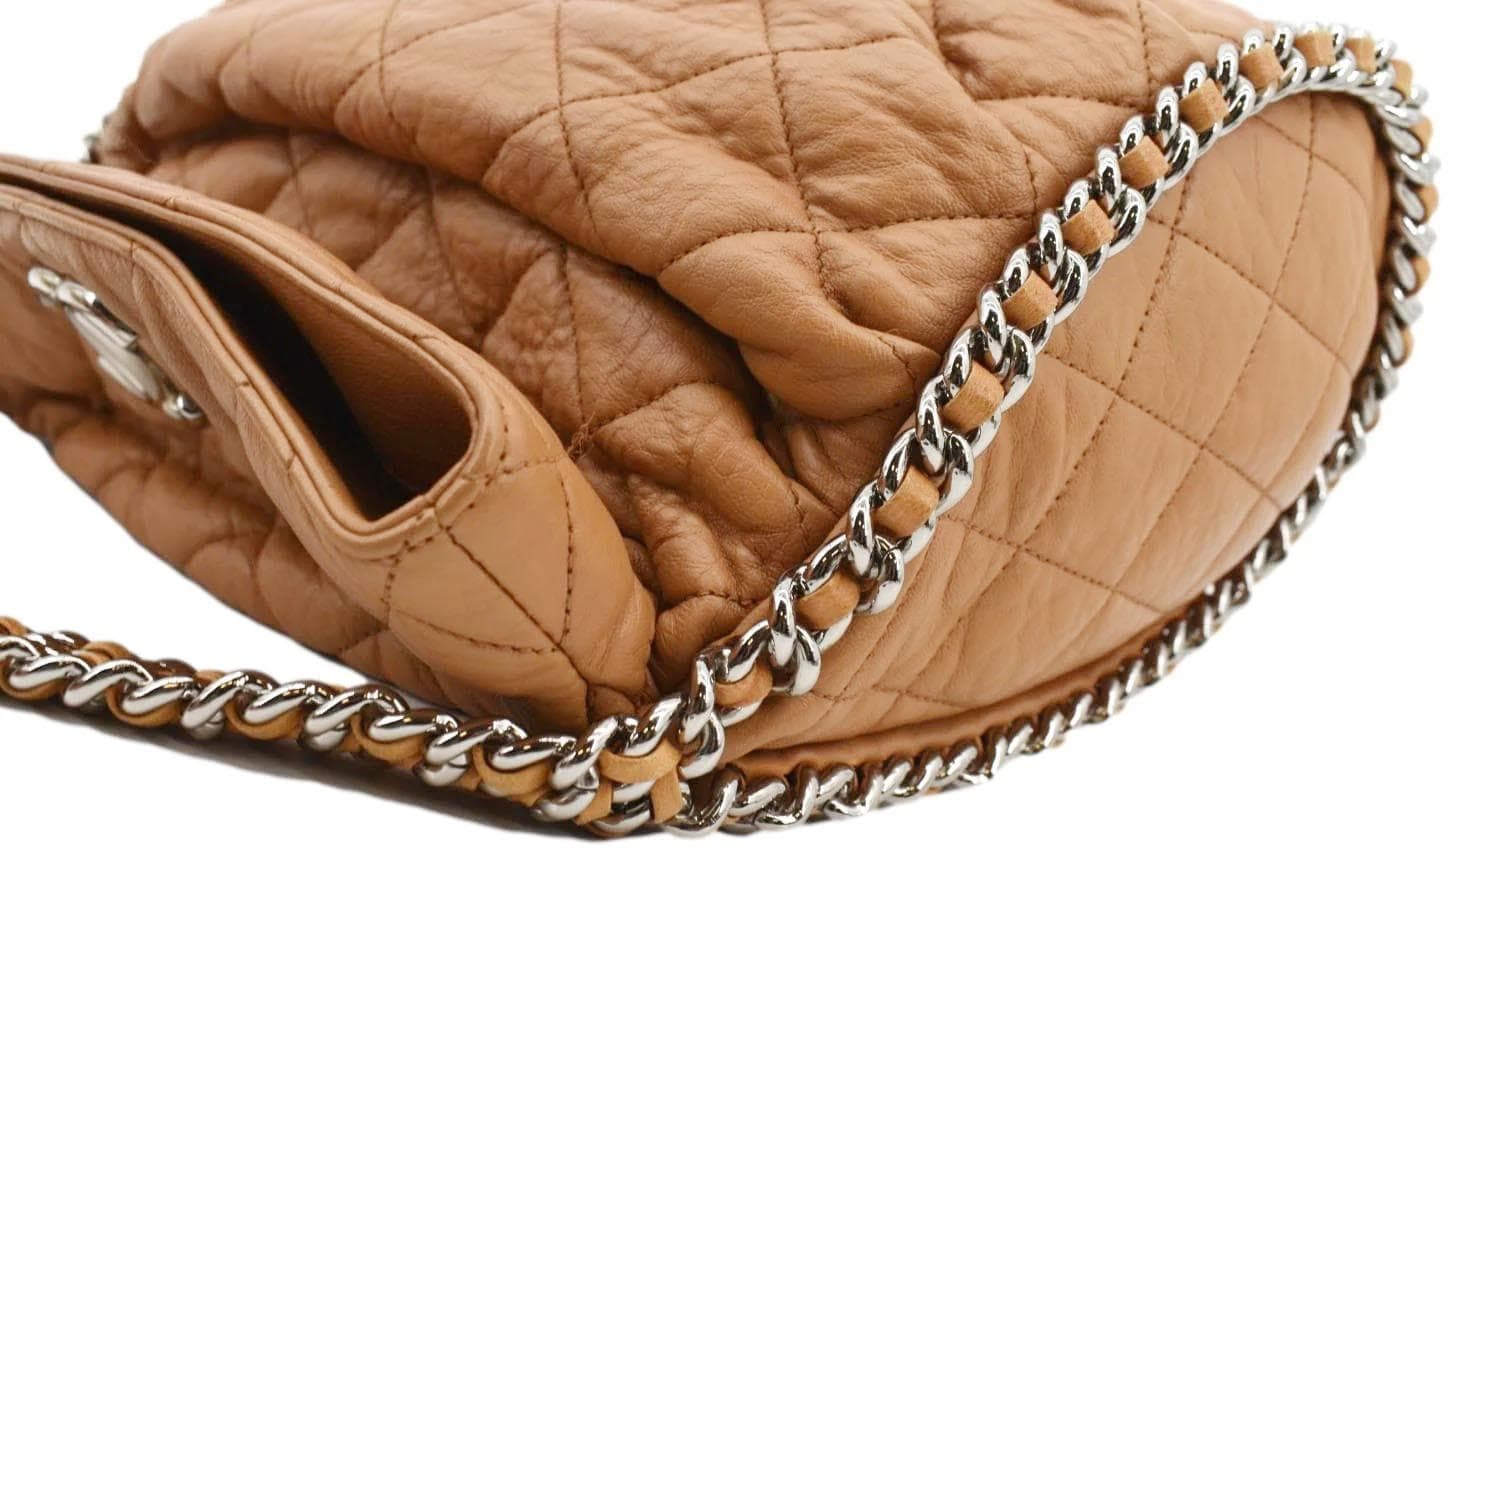 Chanel Large Lambskin Hobo Bag